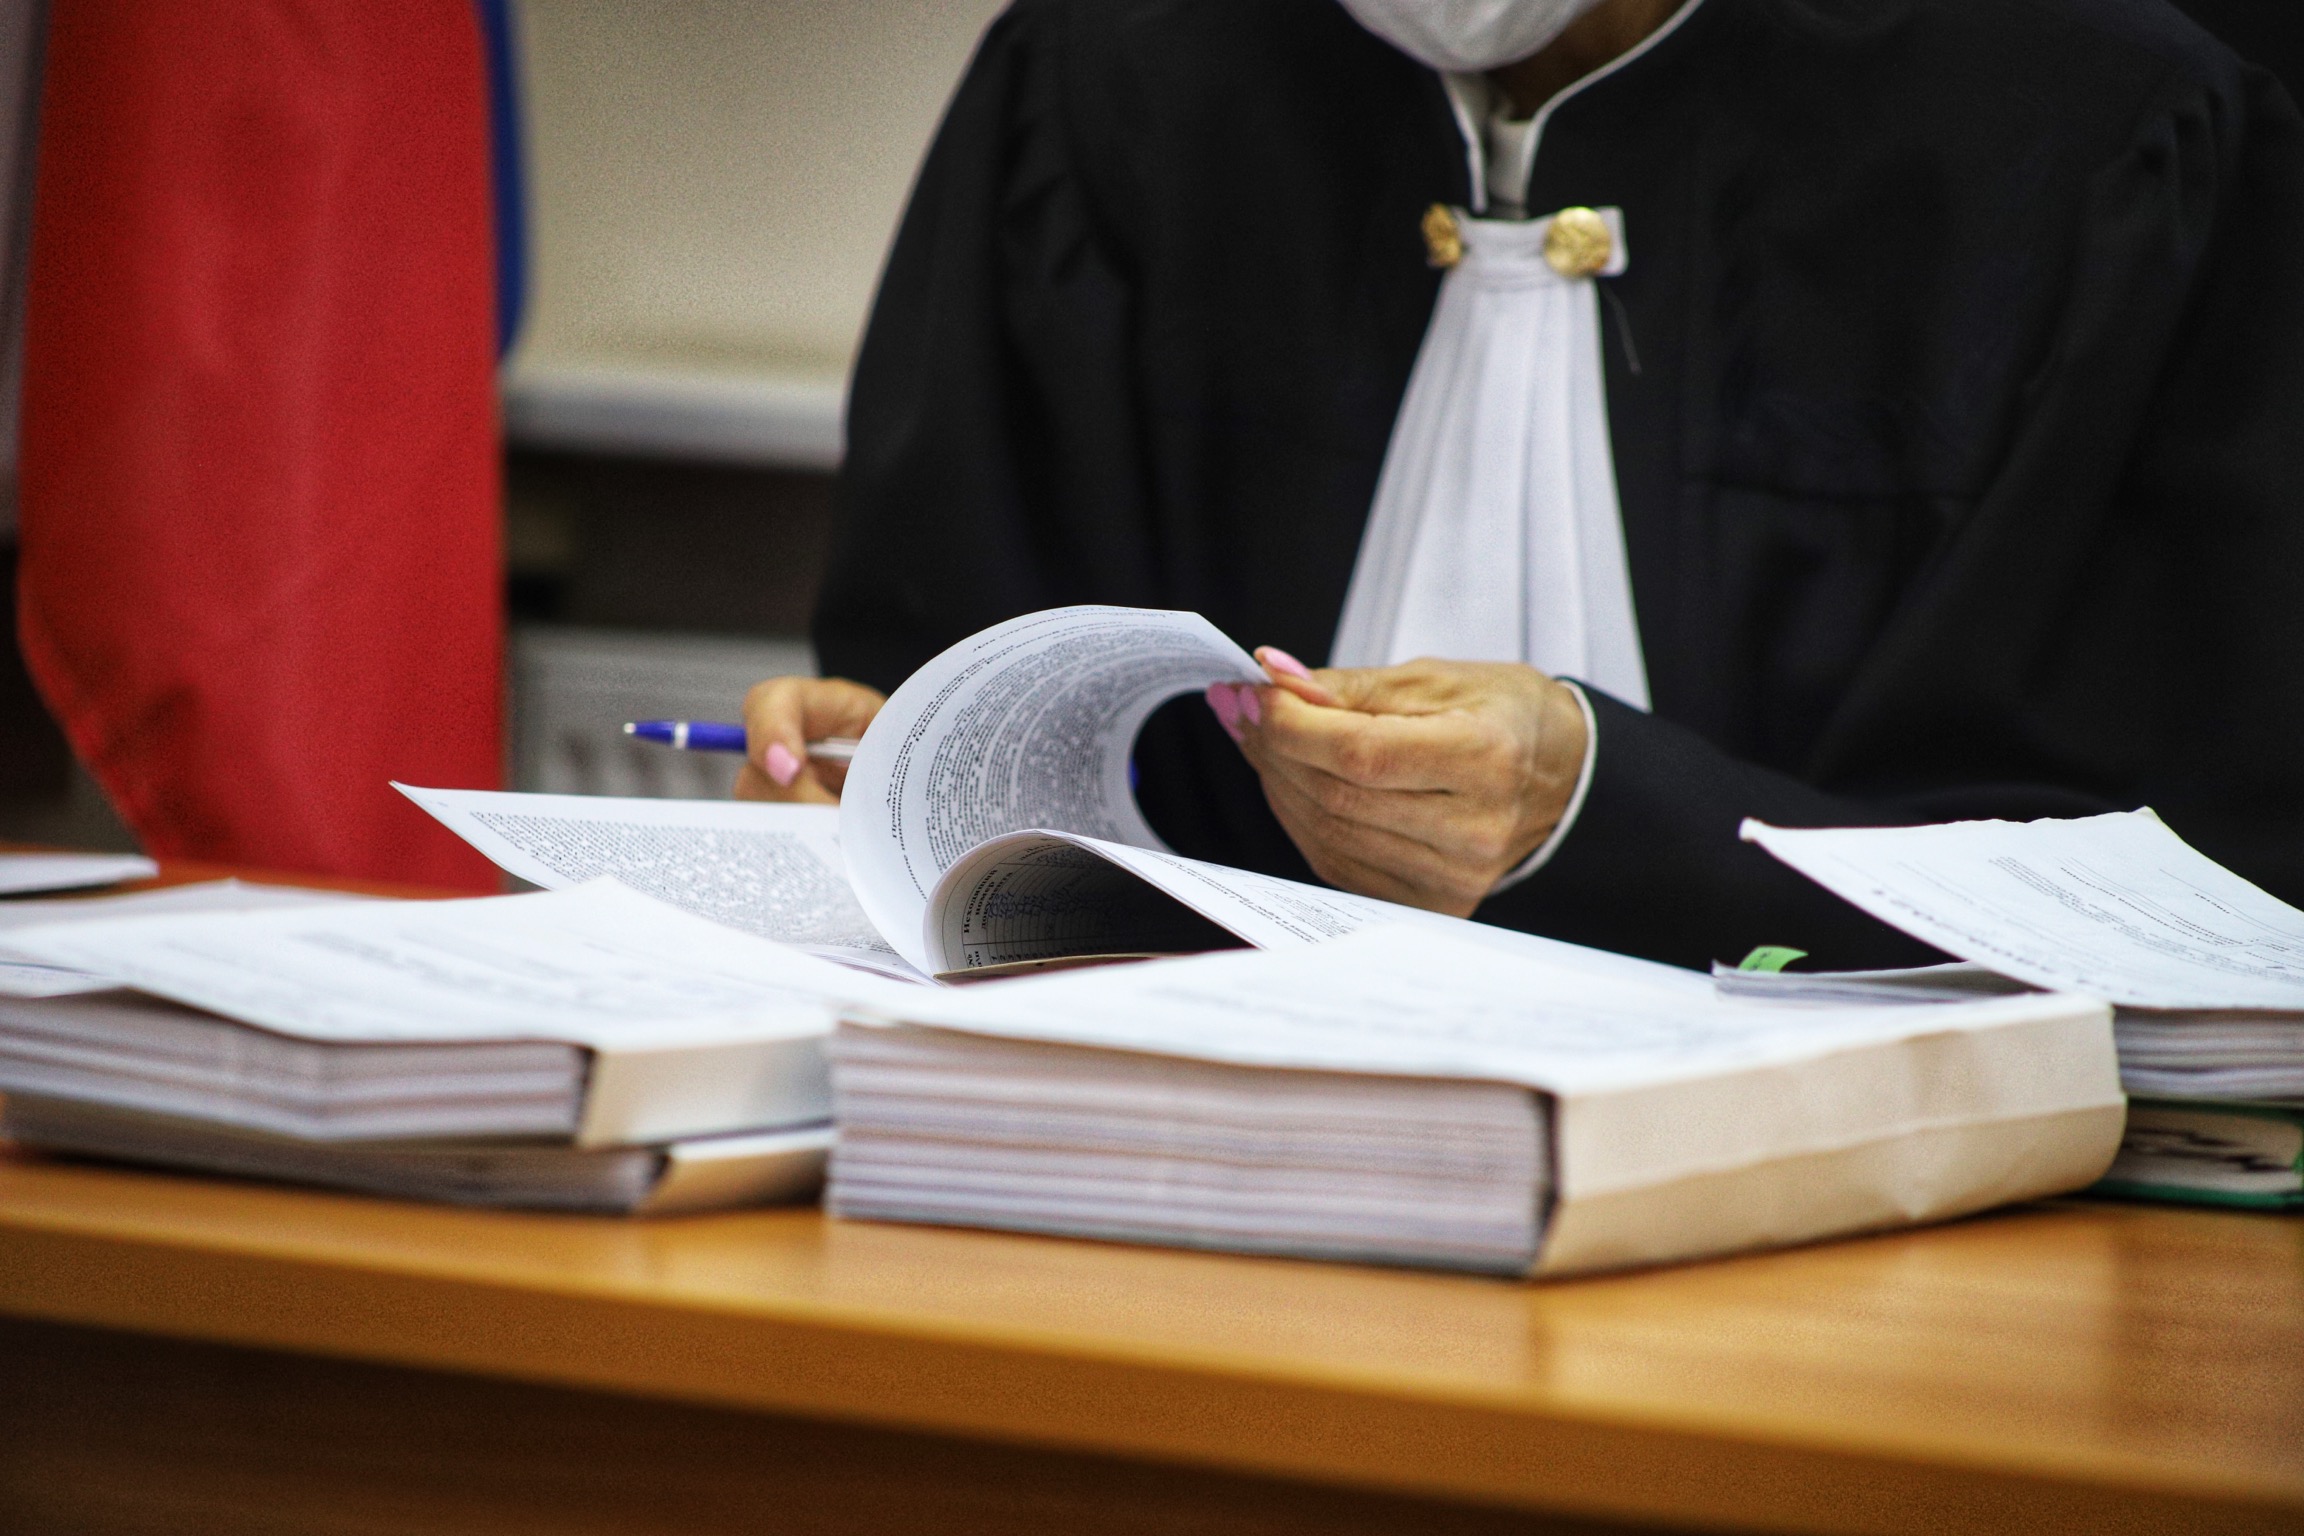 Вынесено определение о подготовке дела к судебному разбирательству с назначением беседы на 12 июля 2023 года